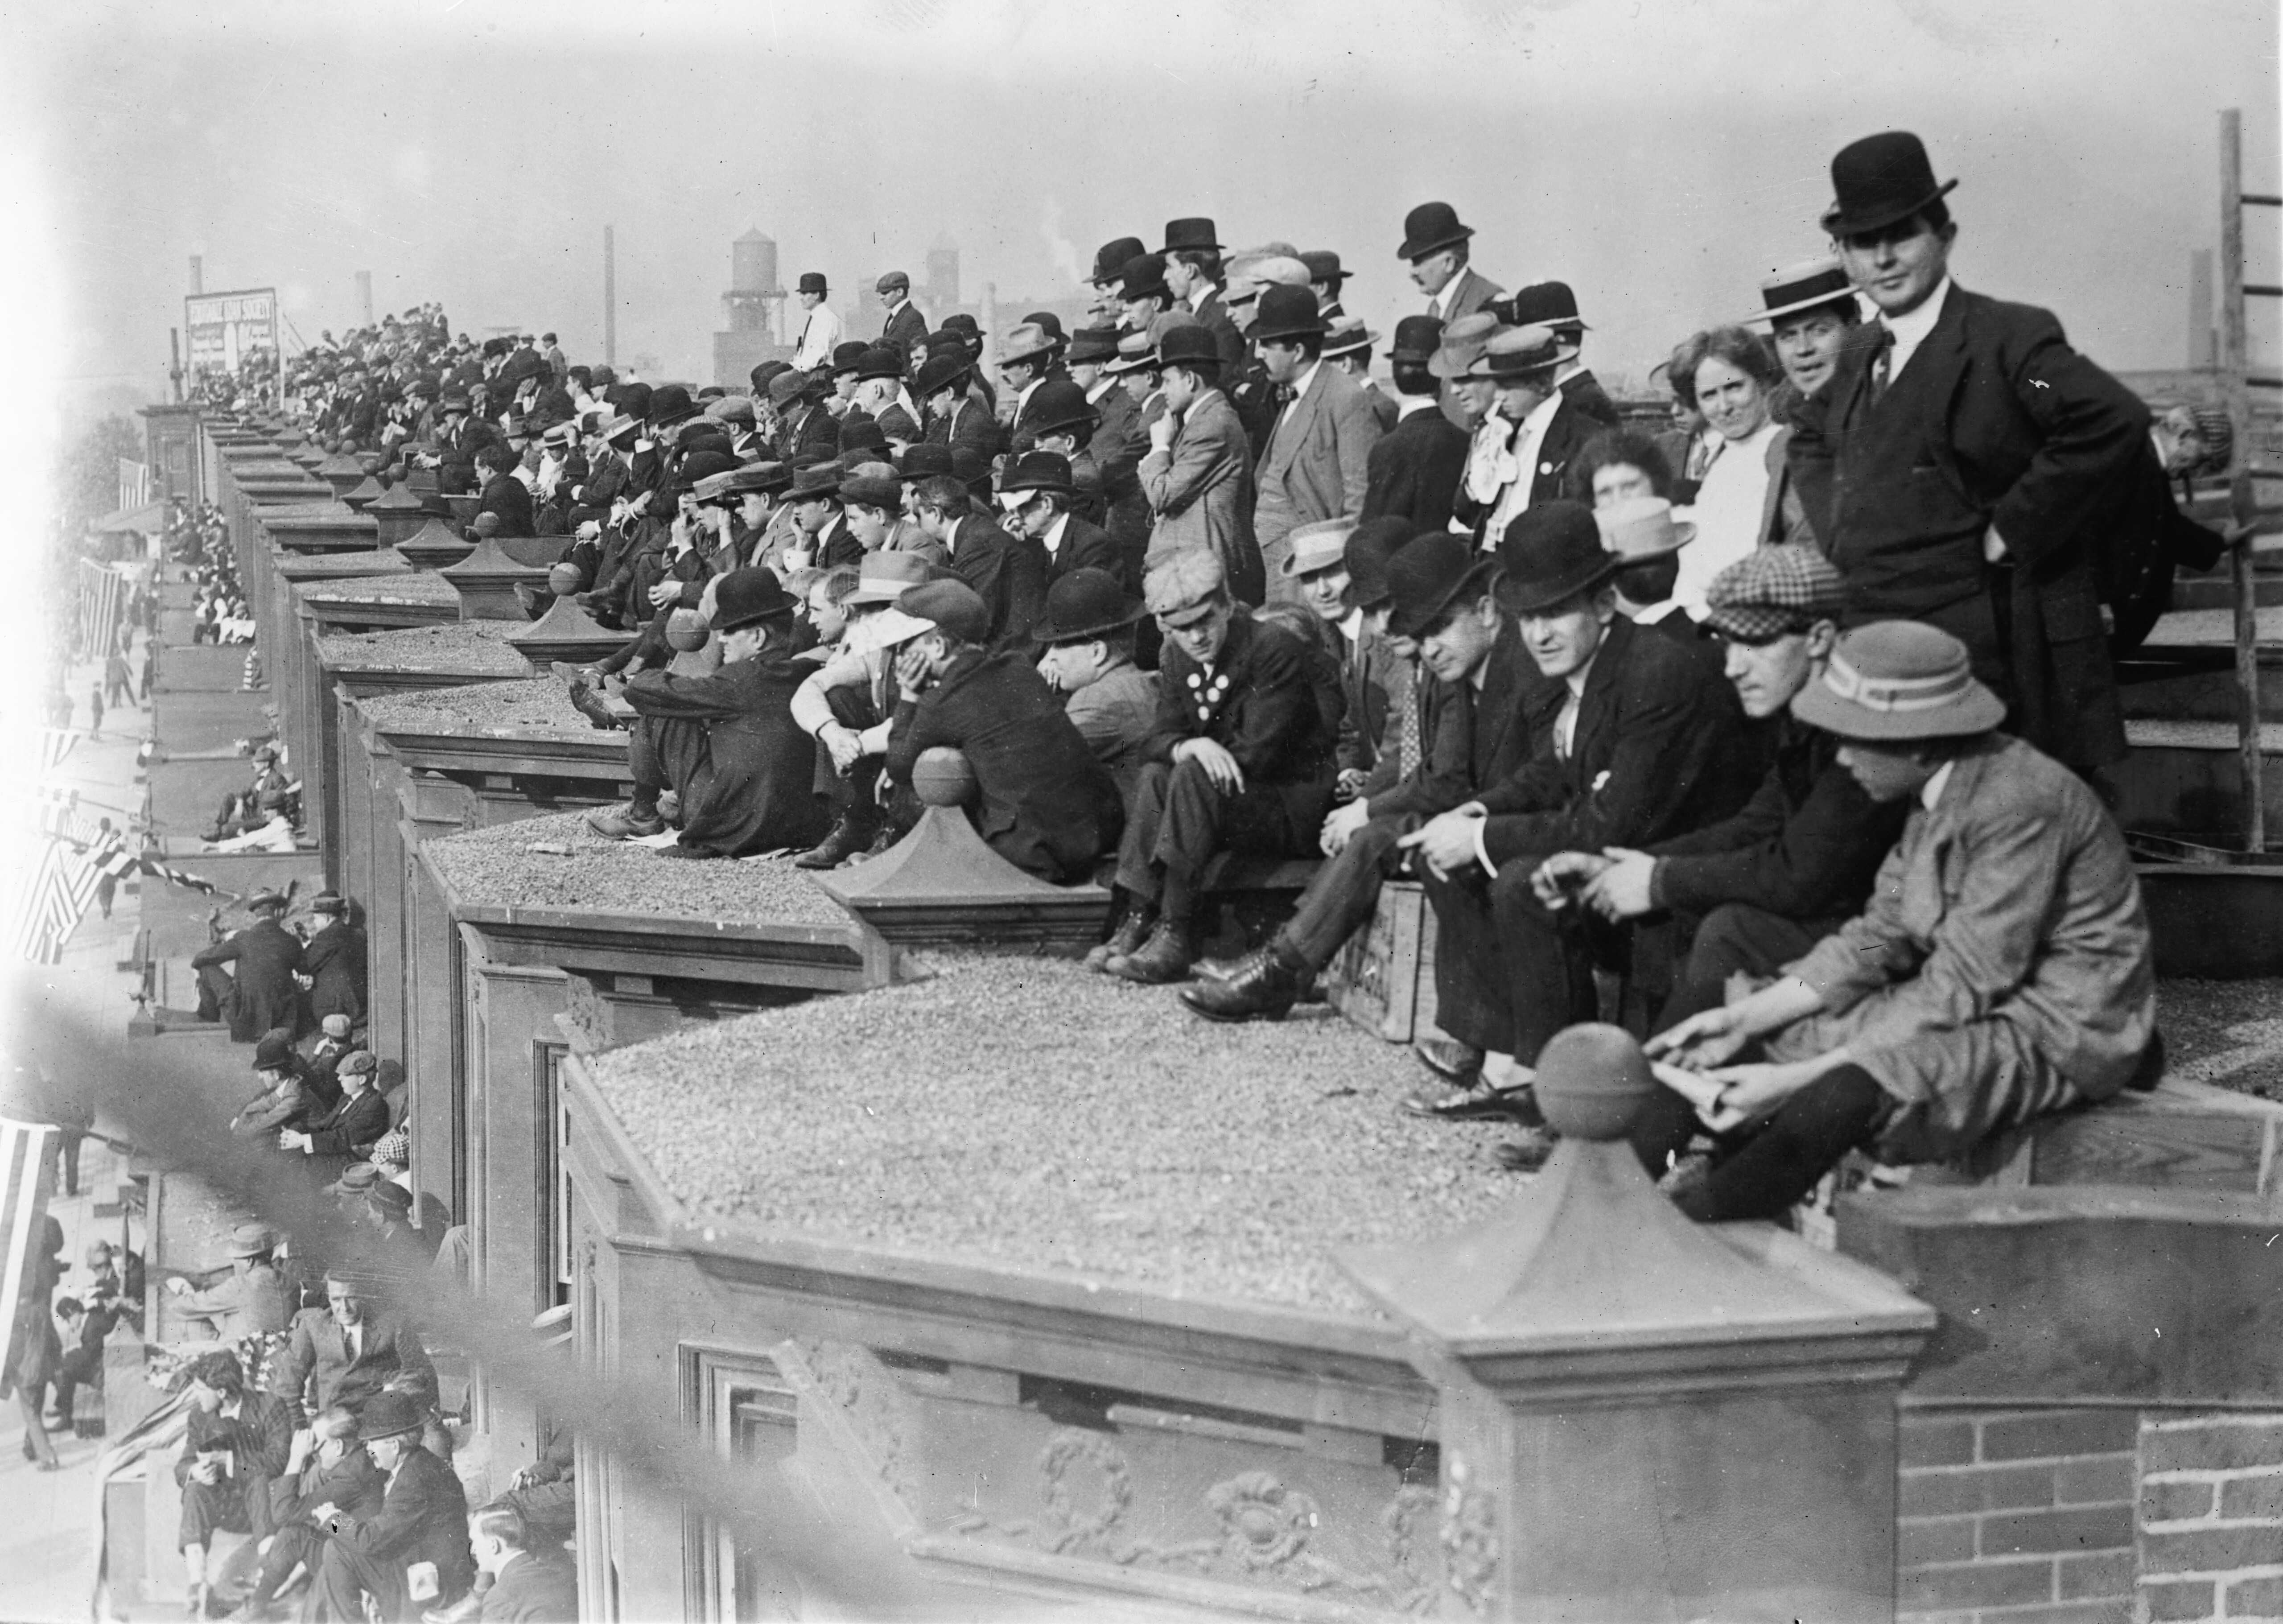 Фанаты бейсбола, Филадельфия, 1910. Фотография из коллекции Джорджа Грантема Бейна